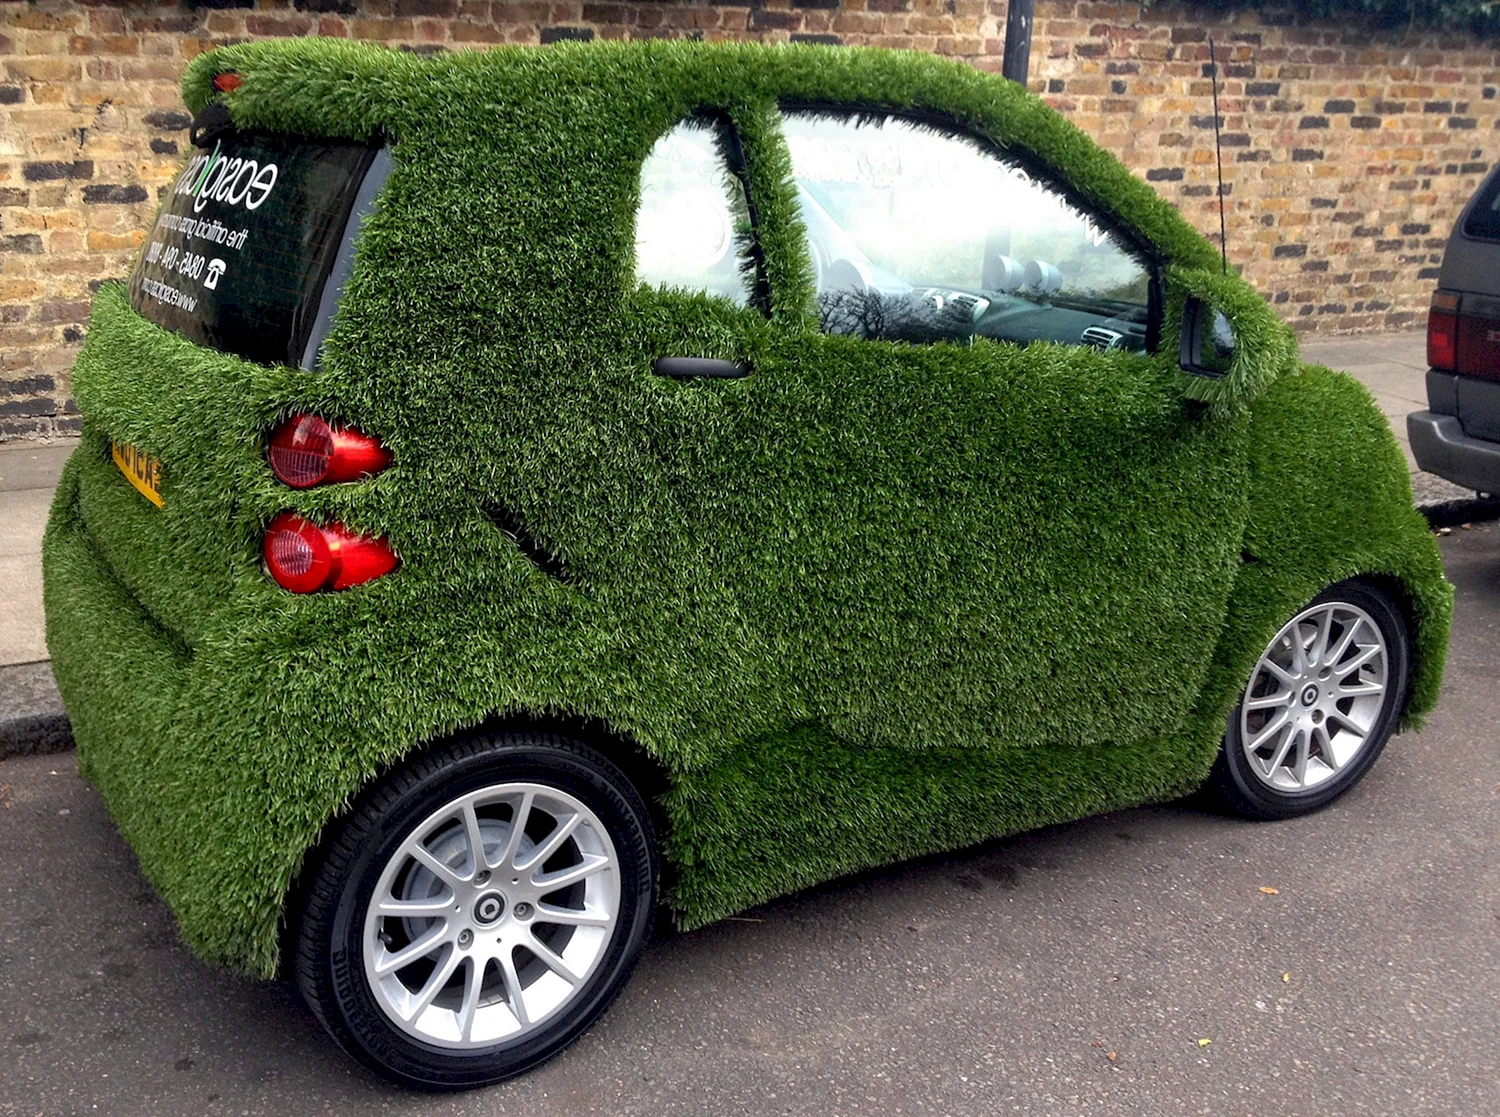 Зеленый автомобиль